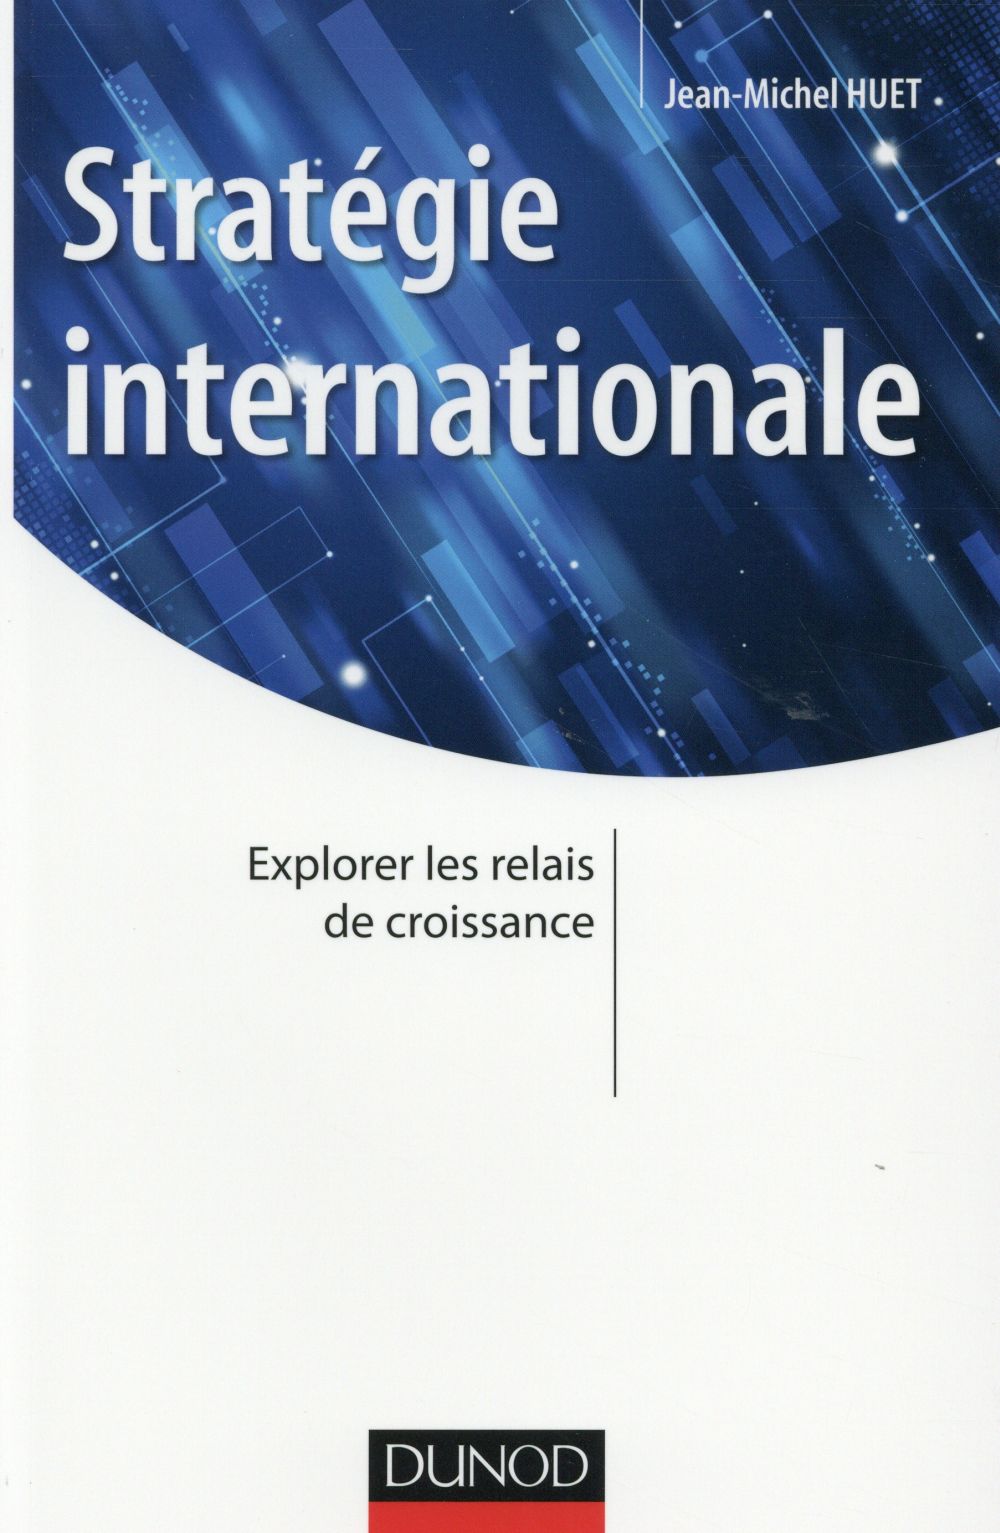 STRATEGIE INTERNATIONALE - EXPLORER LES RELAIS DE CROISSANCE